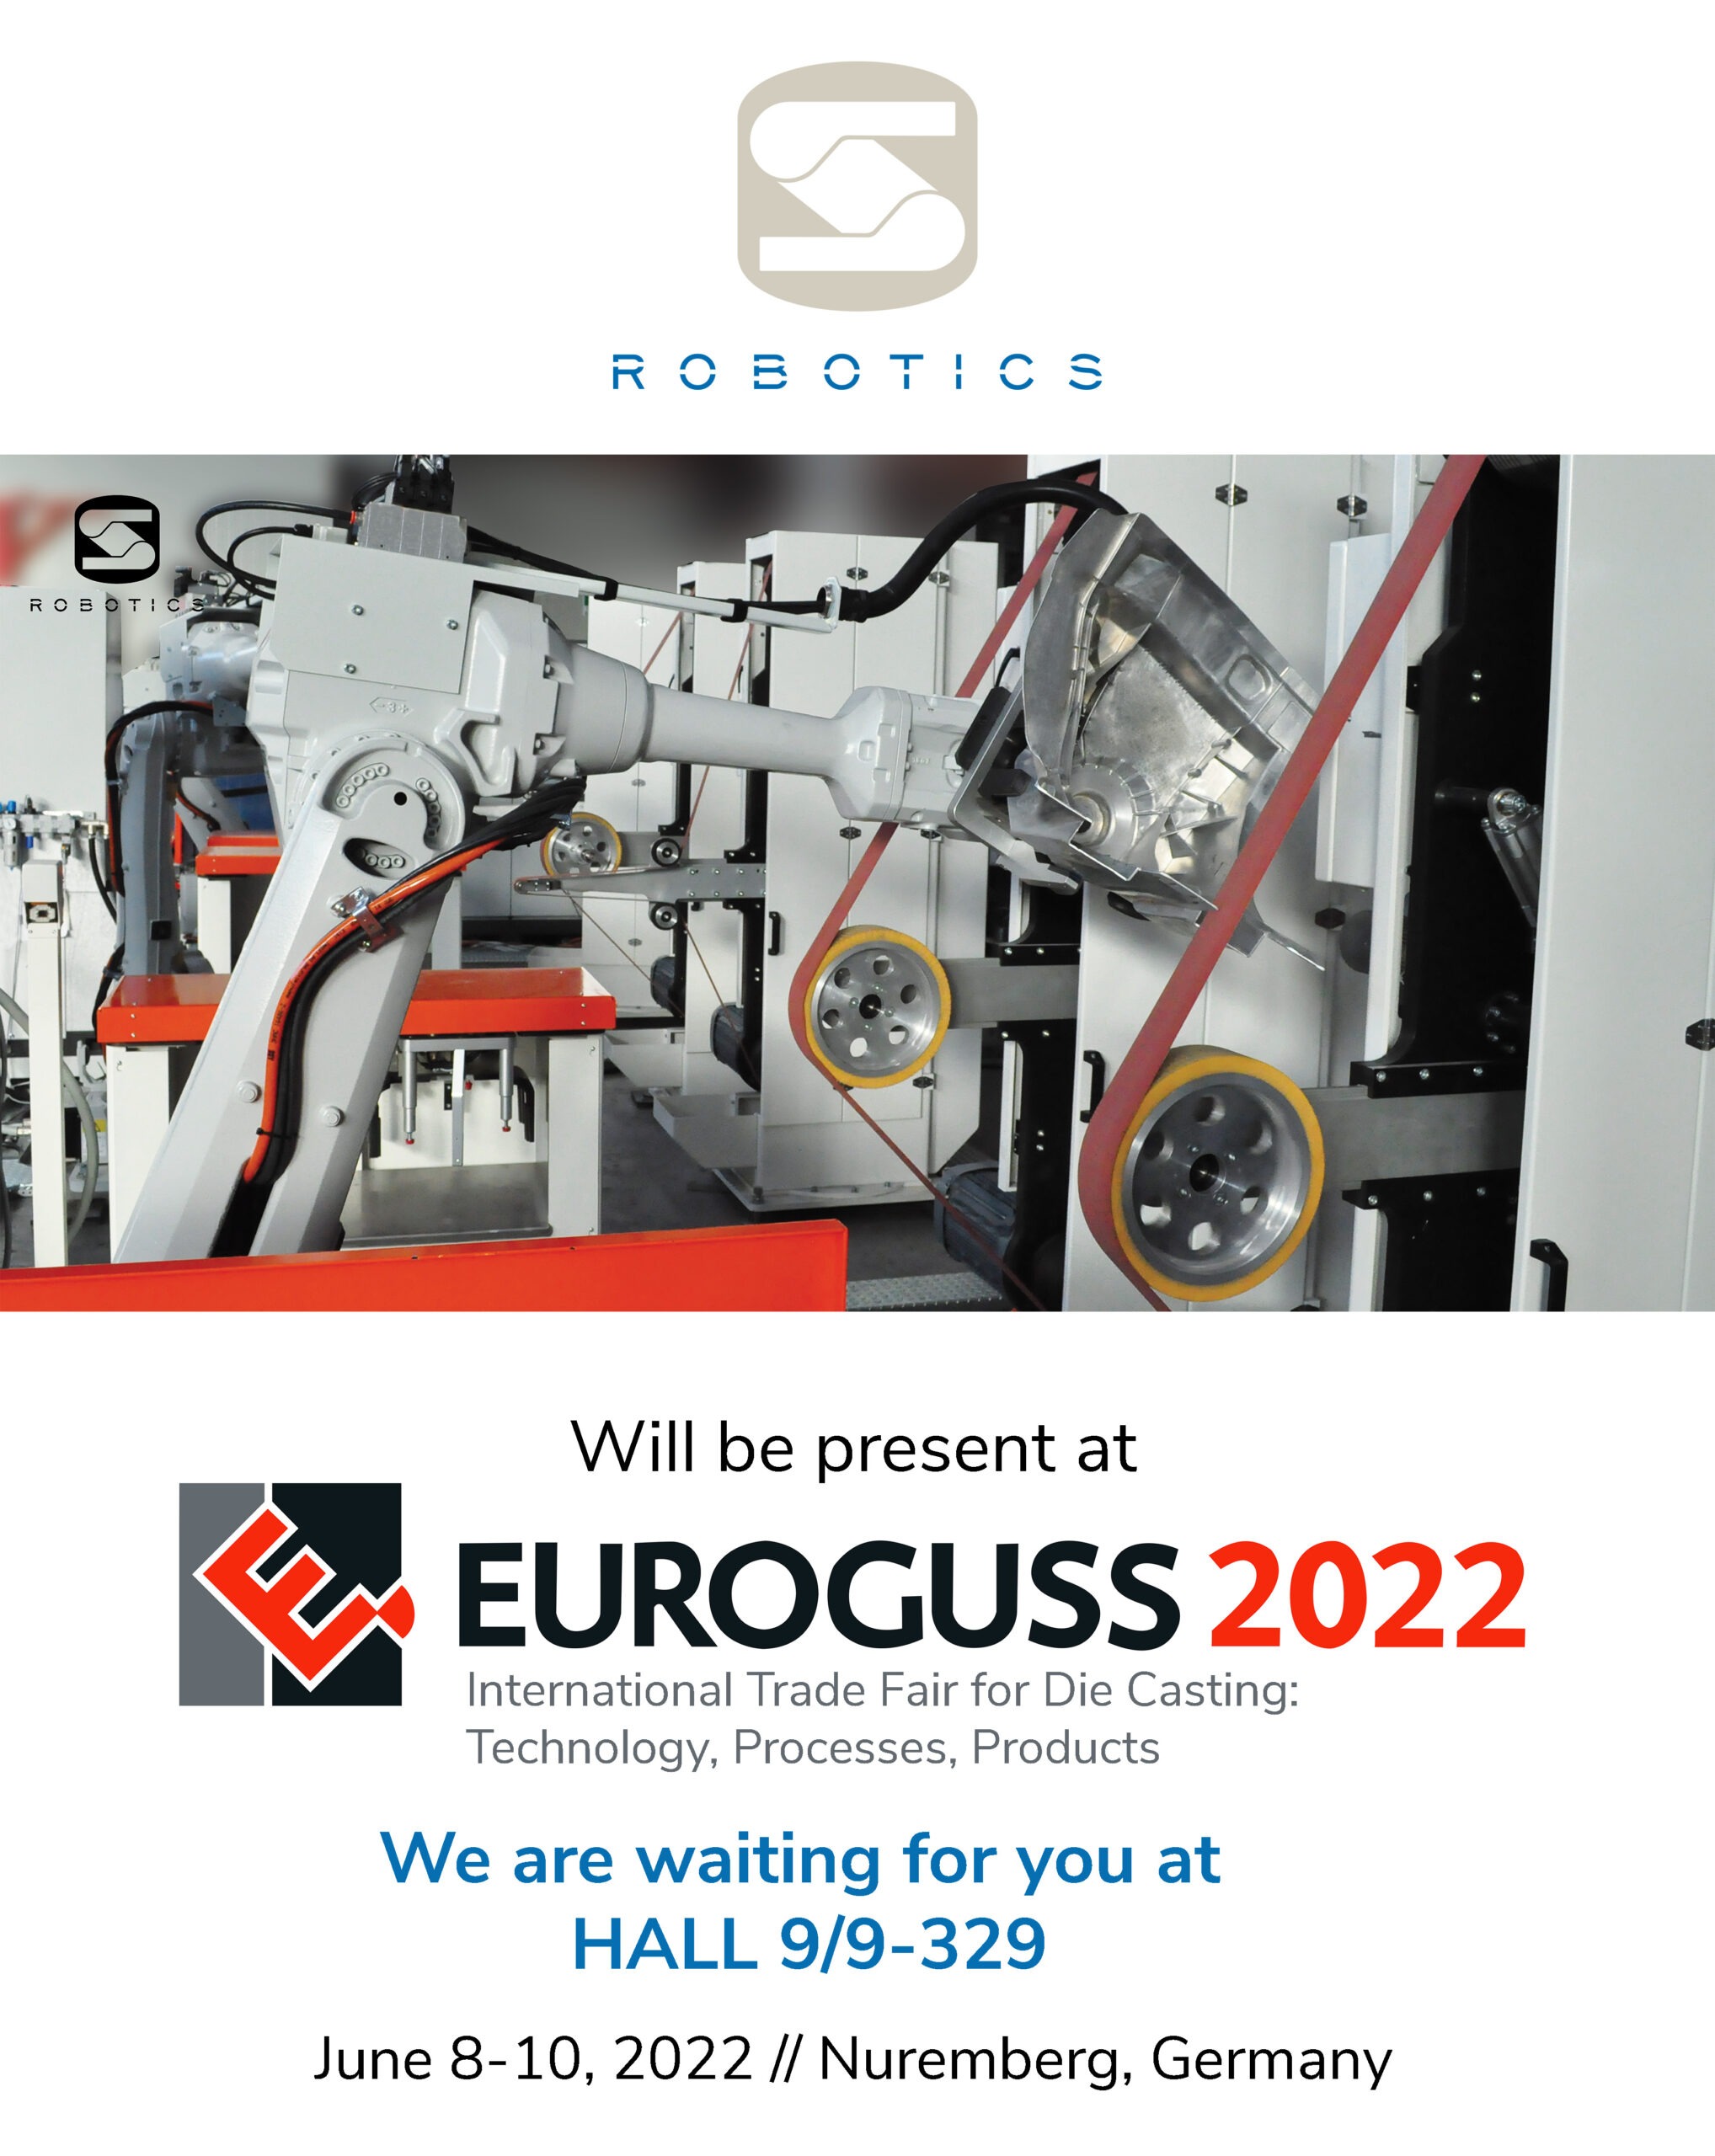 Sir Robotics EuroGuss 2022 Norimberga